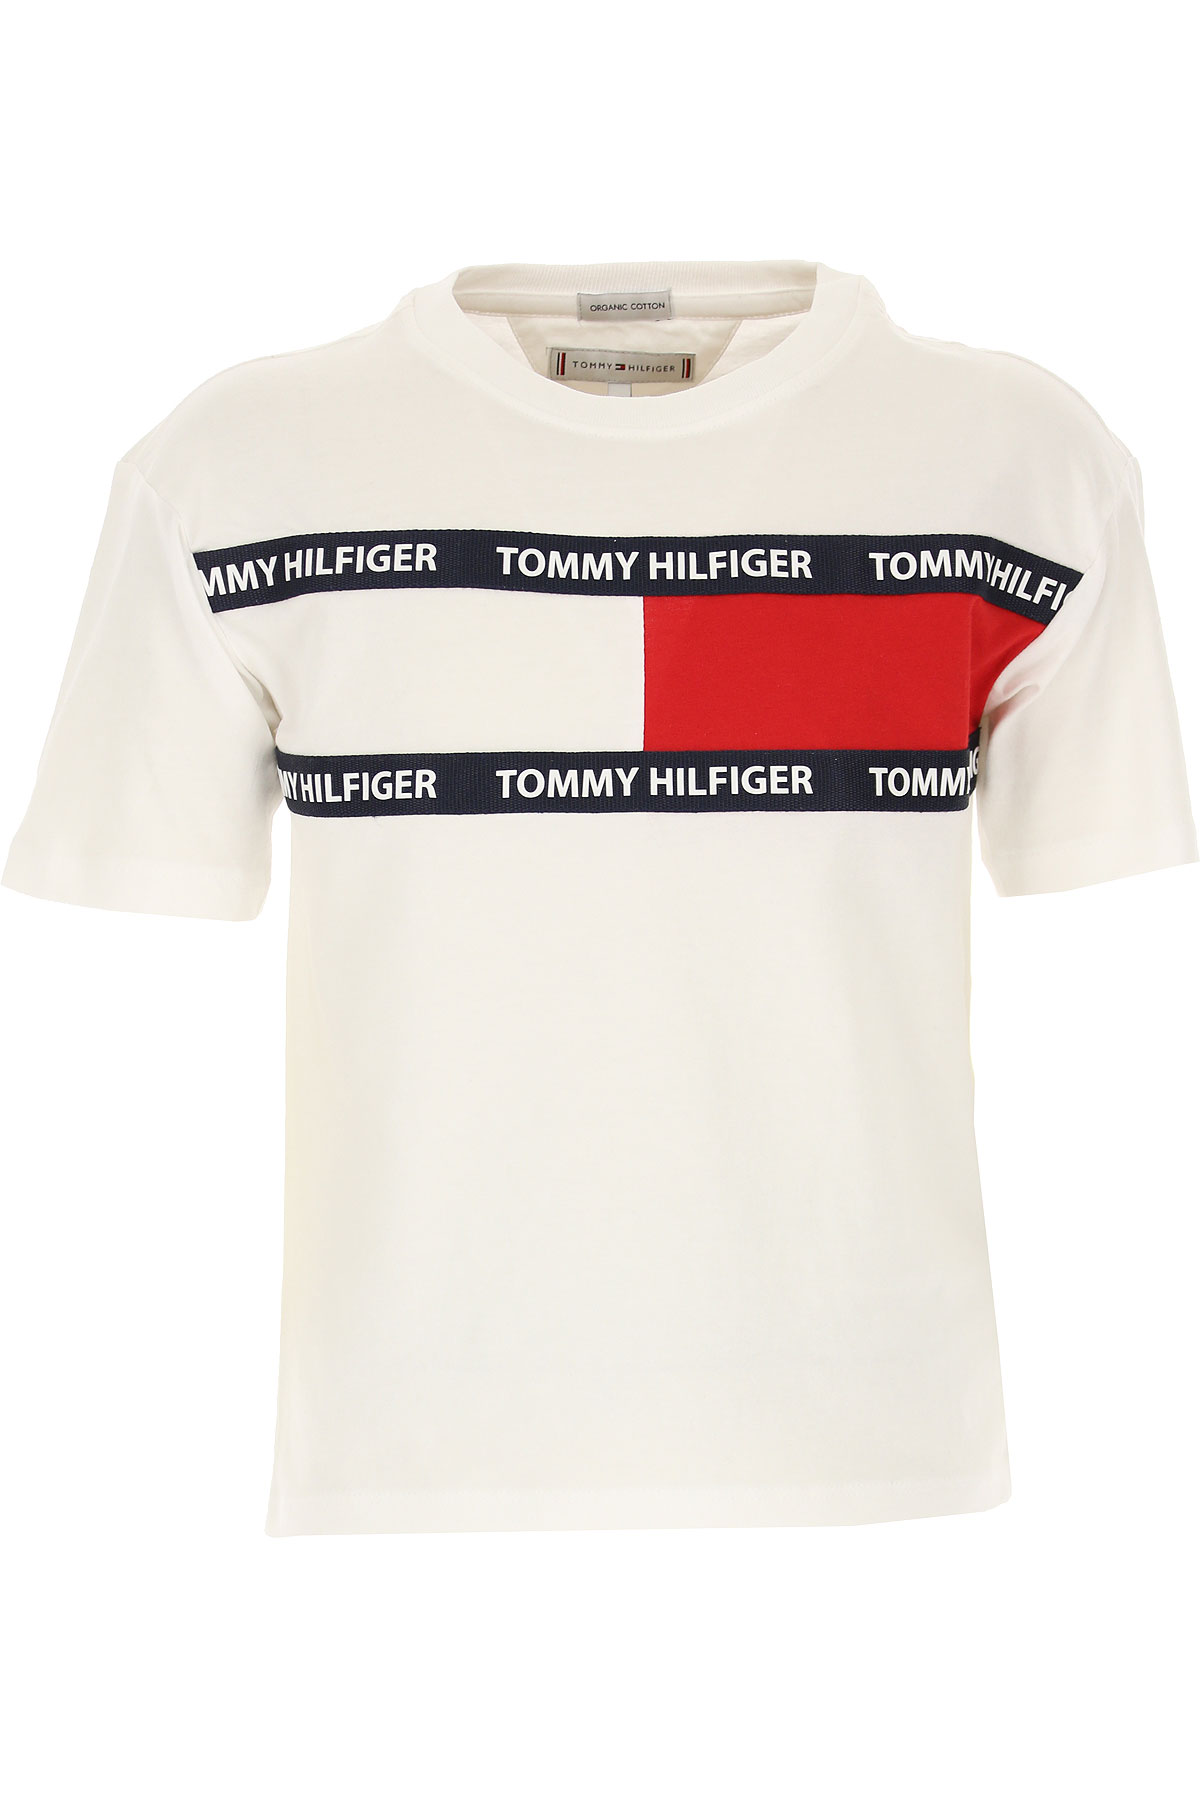 Tommy Hilfiger Kinder T-Shirt für Jungen Günstig im Sale, Weiss, Baumwolle, 2017, 10Y 12Y 4Y